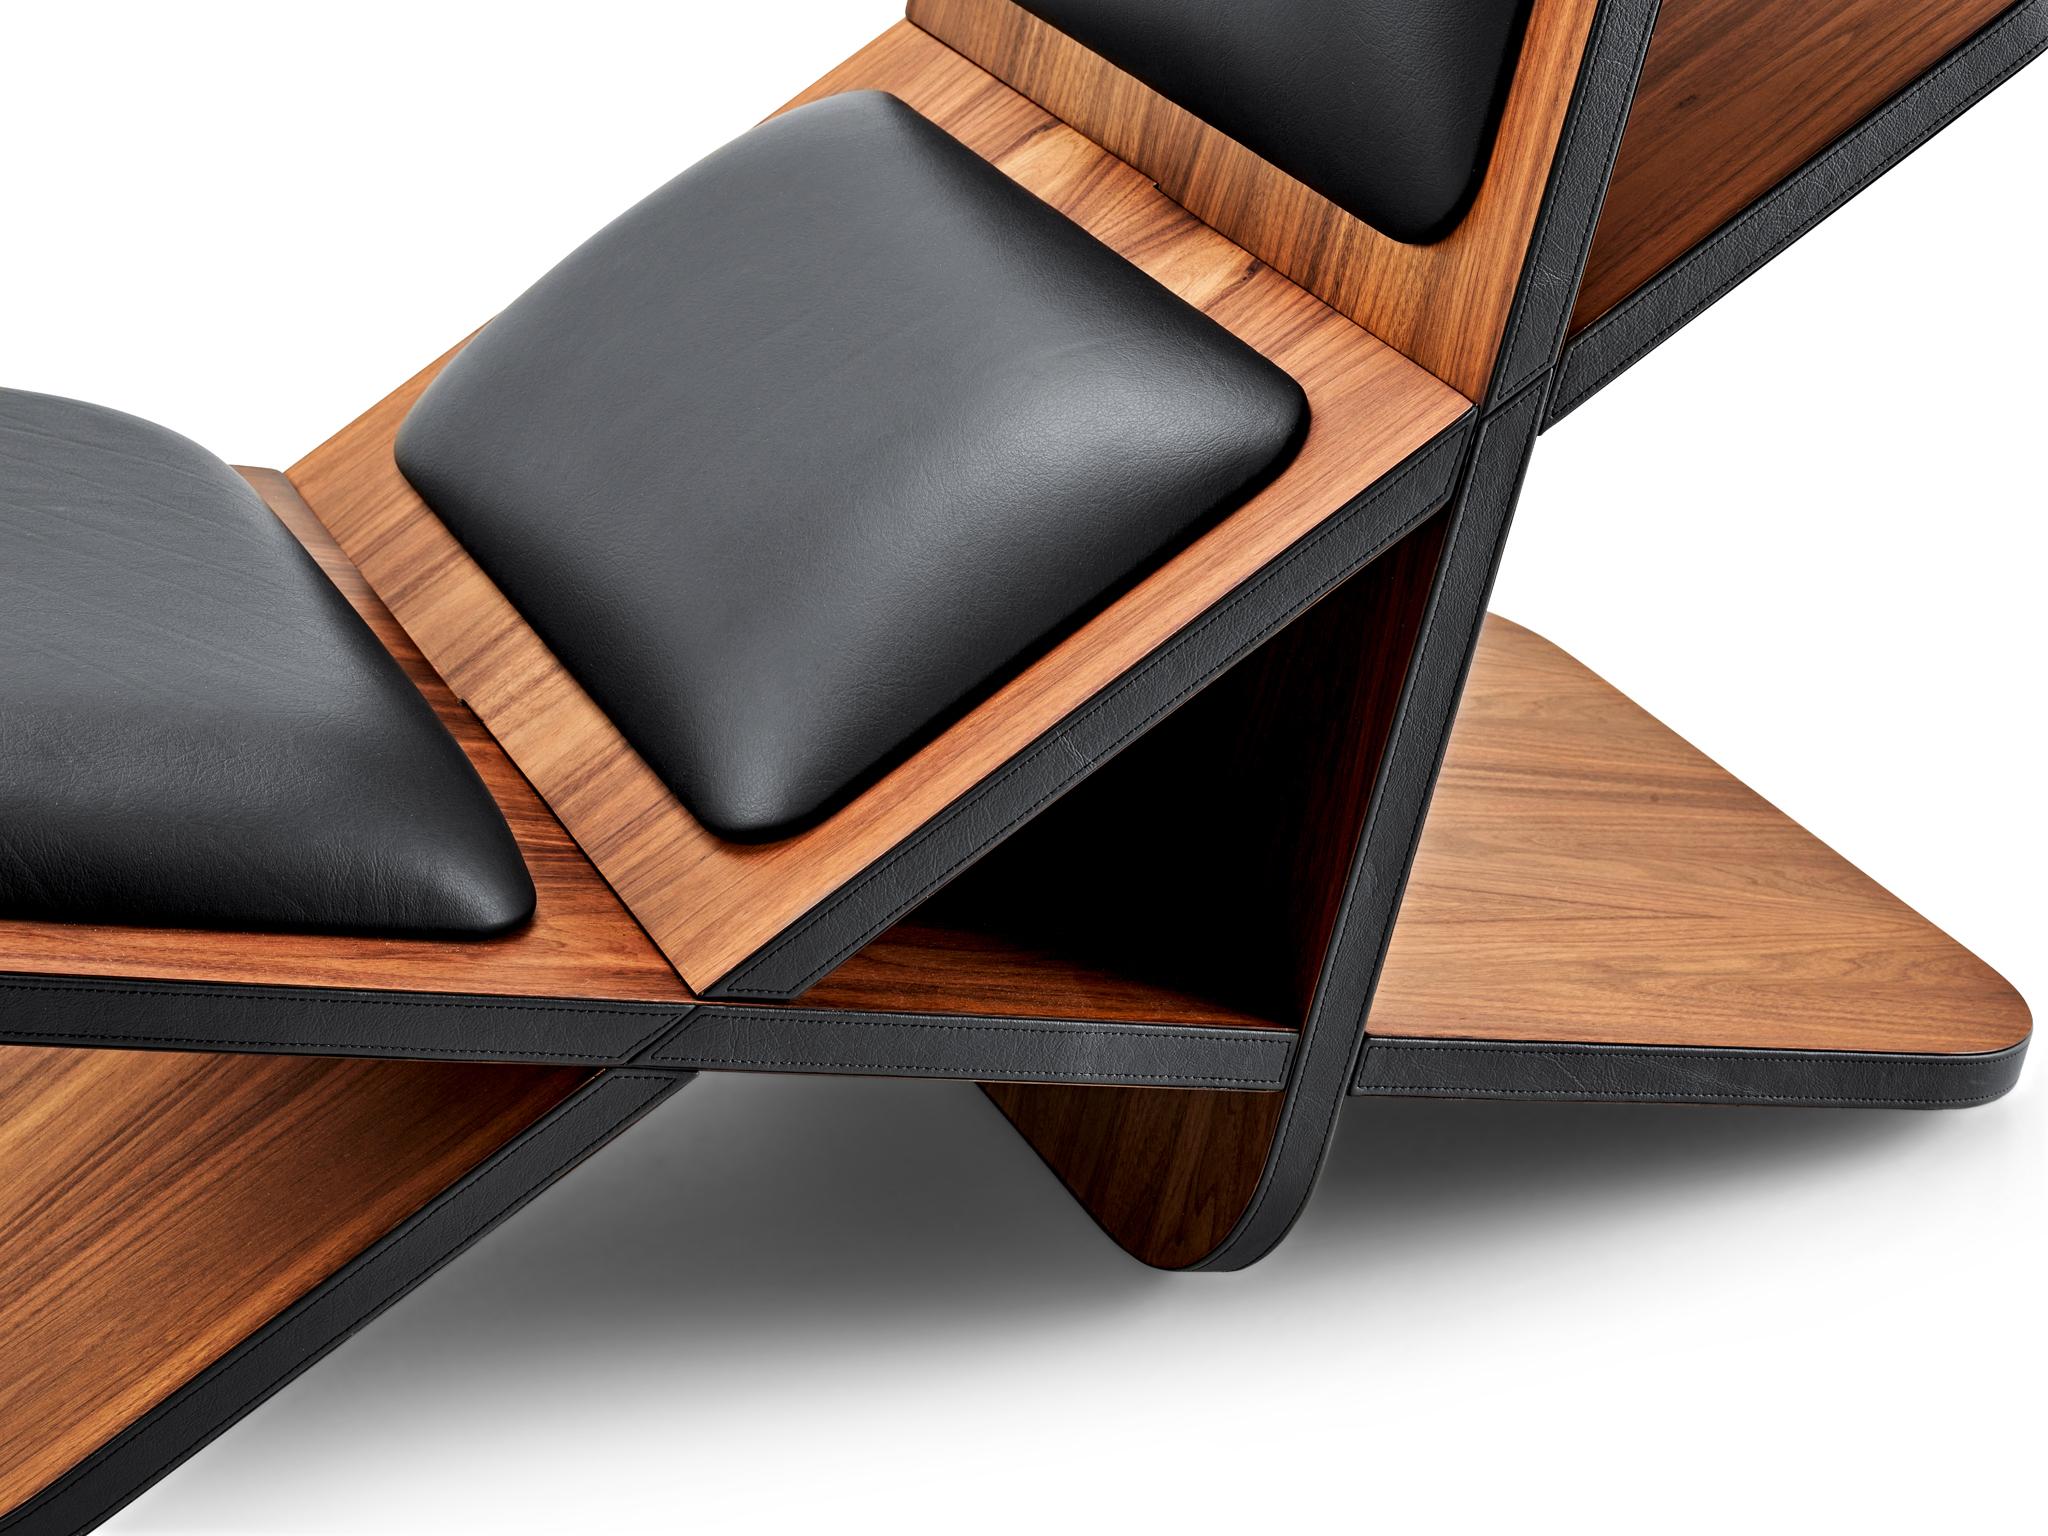 Mit seinen minimalen und zarten Linien ist Cruz ein Sinnbild für modernen Luxus. Die Struktur aus amerikanischem Nussbaumfurnier und die Polsterung aus Leder machen das Möbelstück zu einem Blickfang in jedem Raum, der durch seine eleganten Details